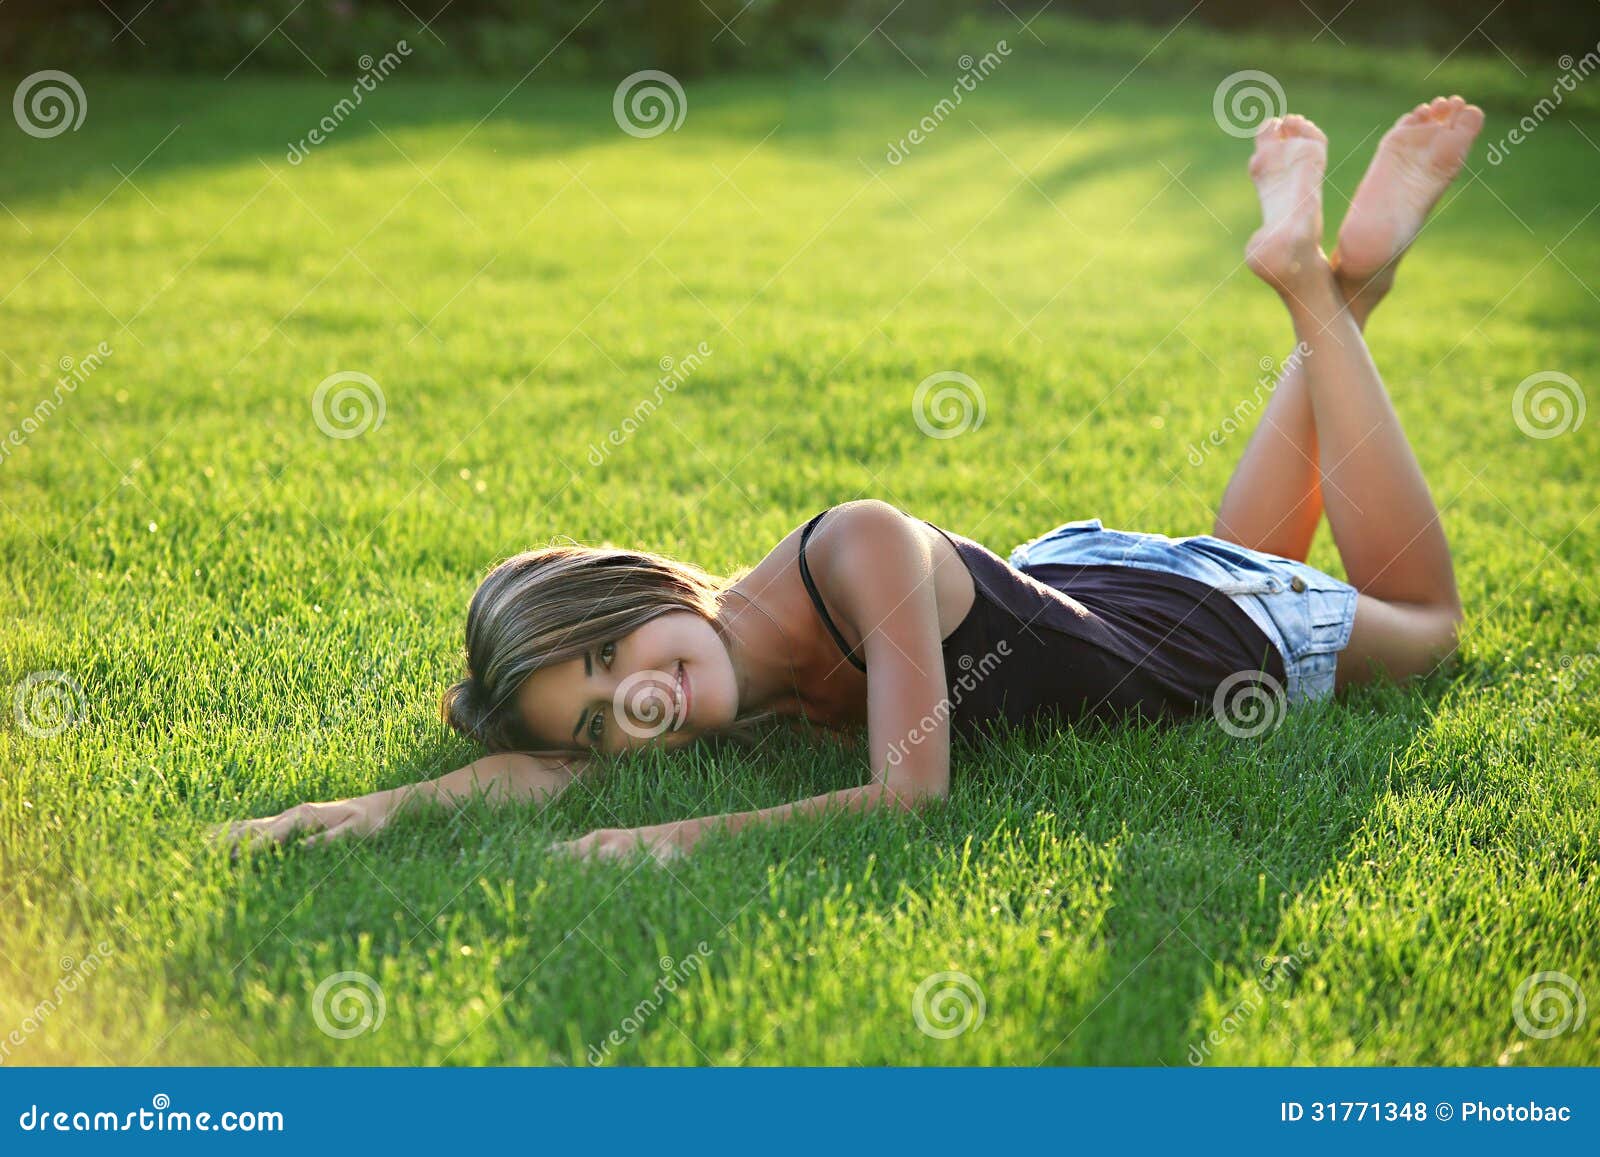 Лежа на животе подборка. Девушка лежит на траве. Девушка лежит на лужайке. Девушки лежат на траве босиком. Подросток лежит на траве.